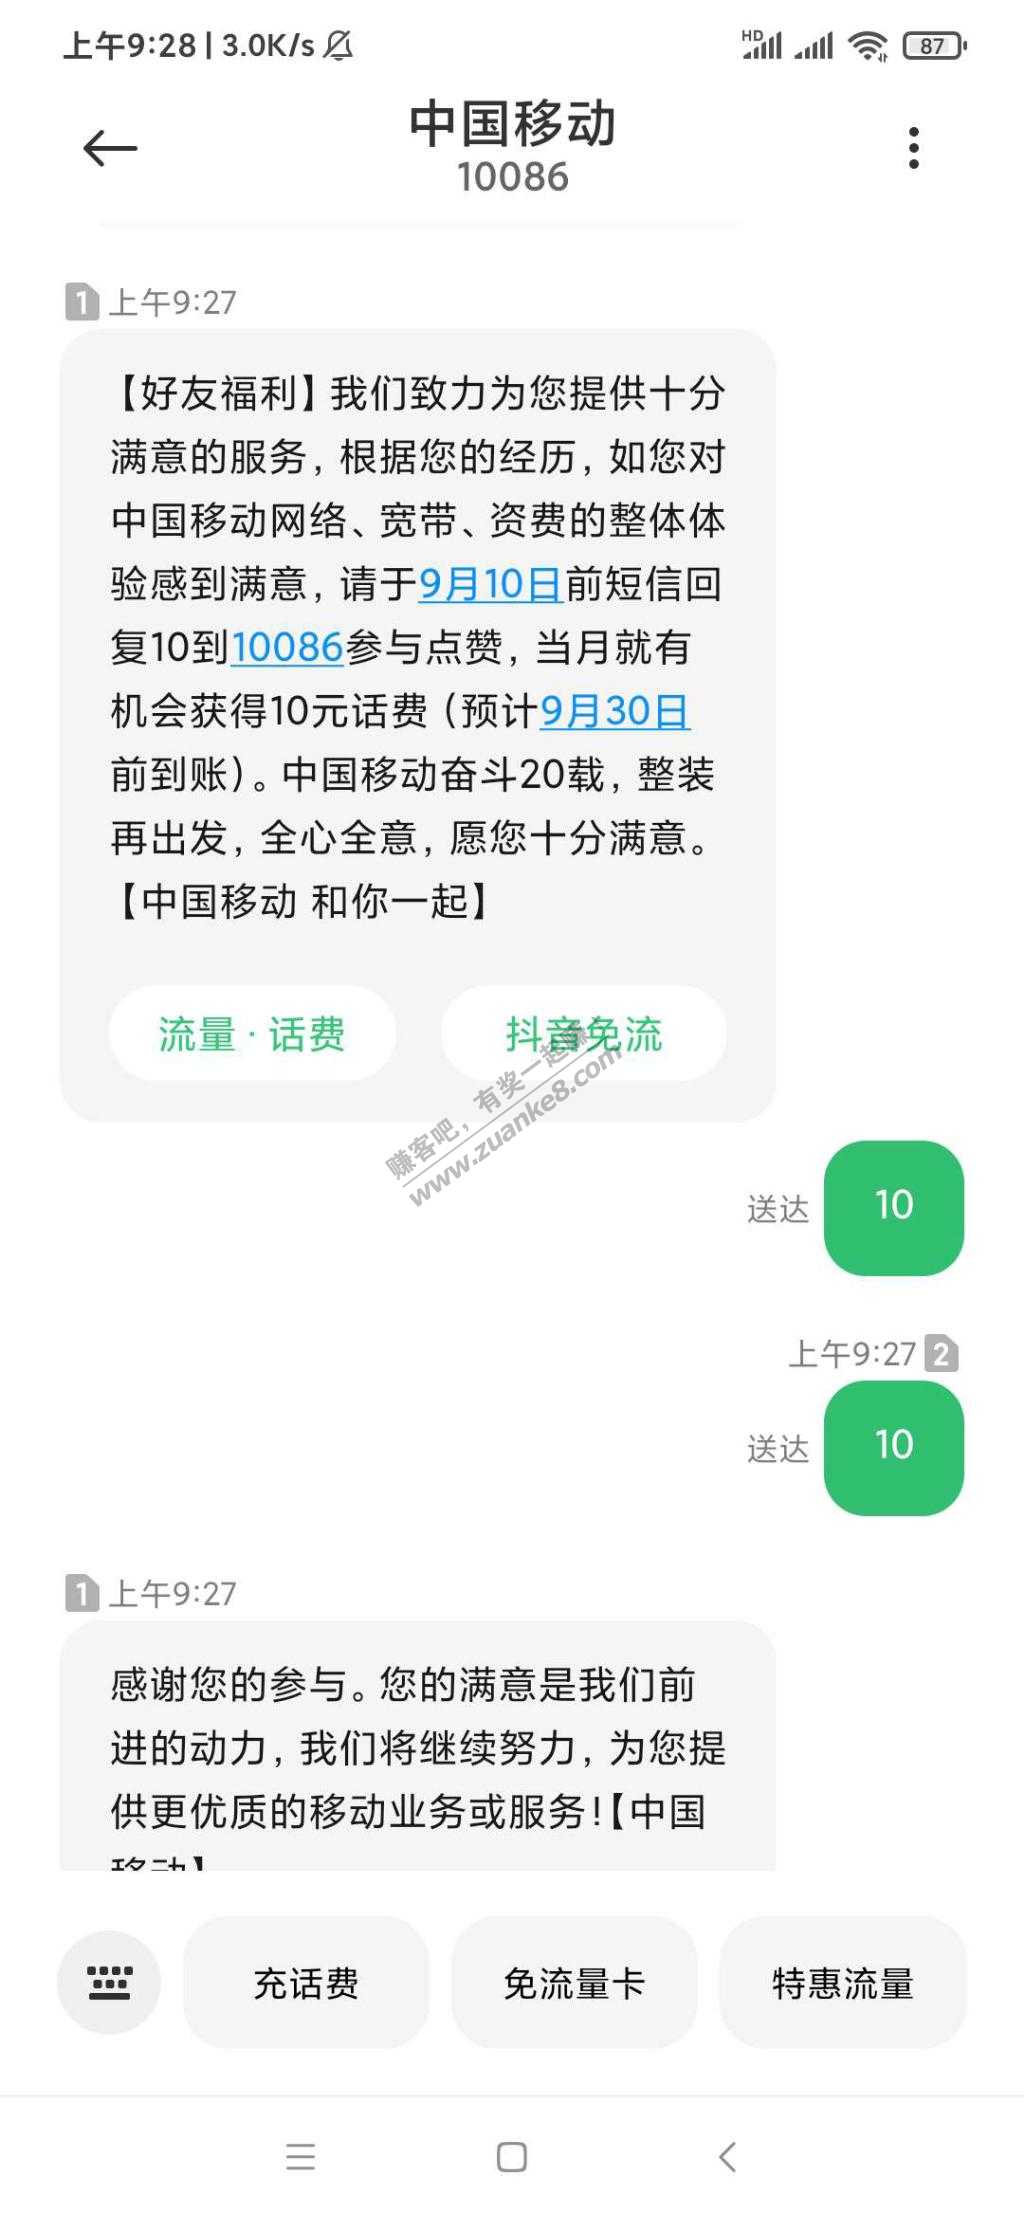 10086回复10有机会获得10元话费。-惠小助(52huixz.com)